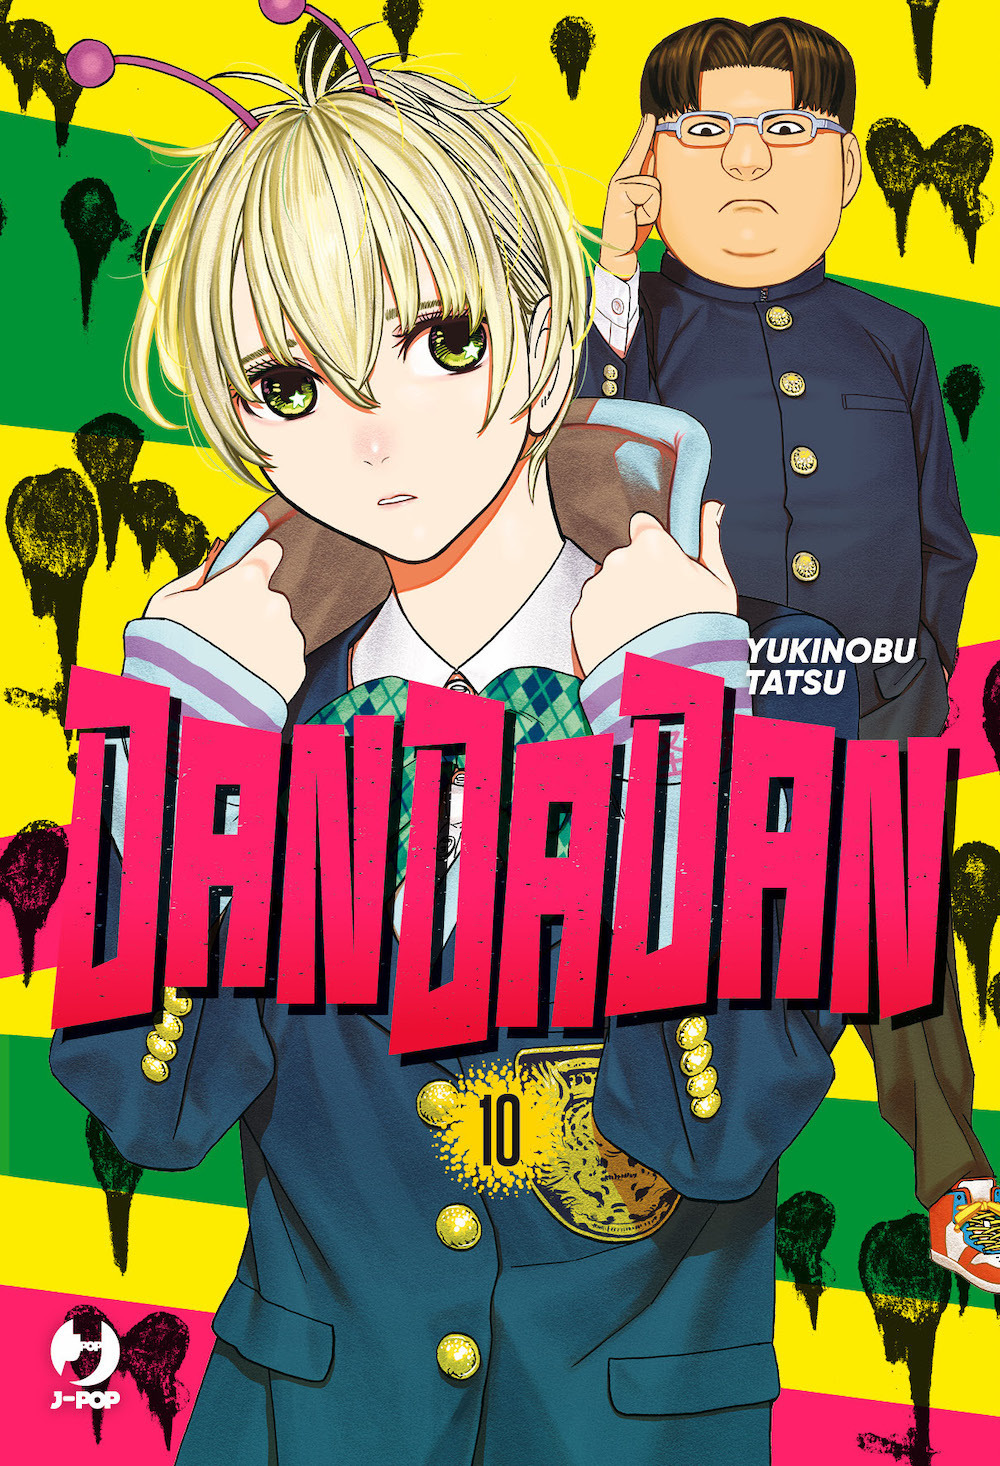 Dandadan. Vol. 10